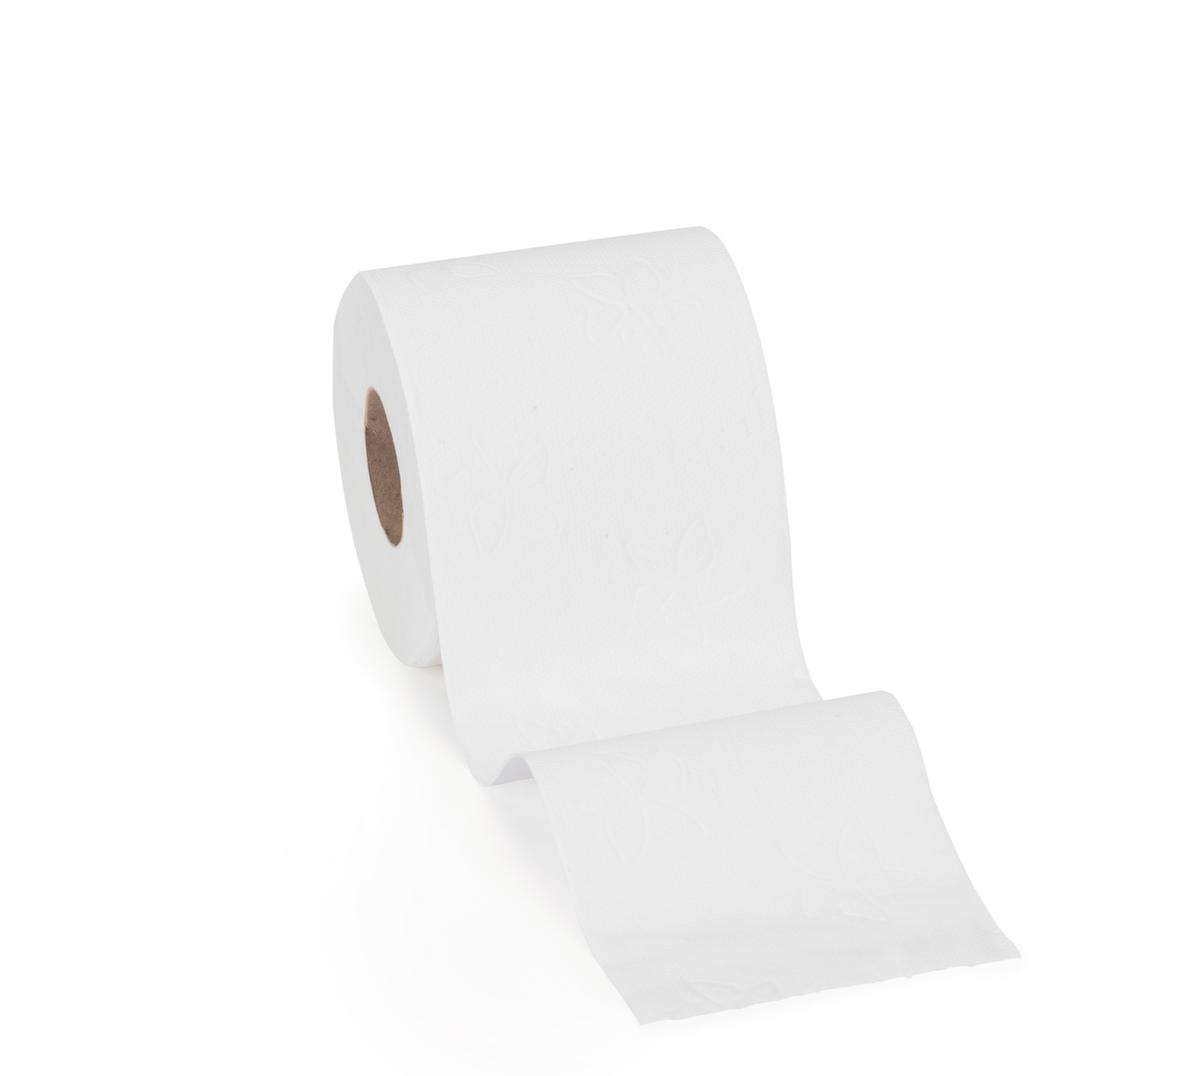 Tork toiletpapier Advanced voor weinig bezoekers  ZOOM